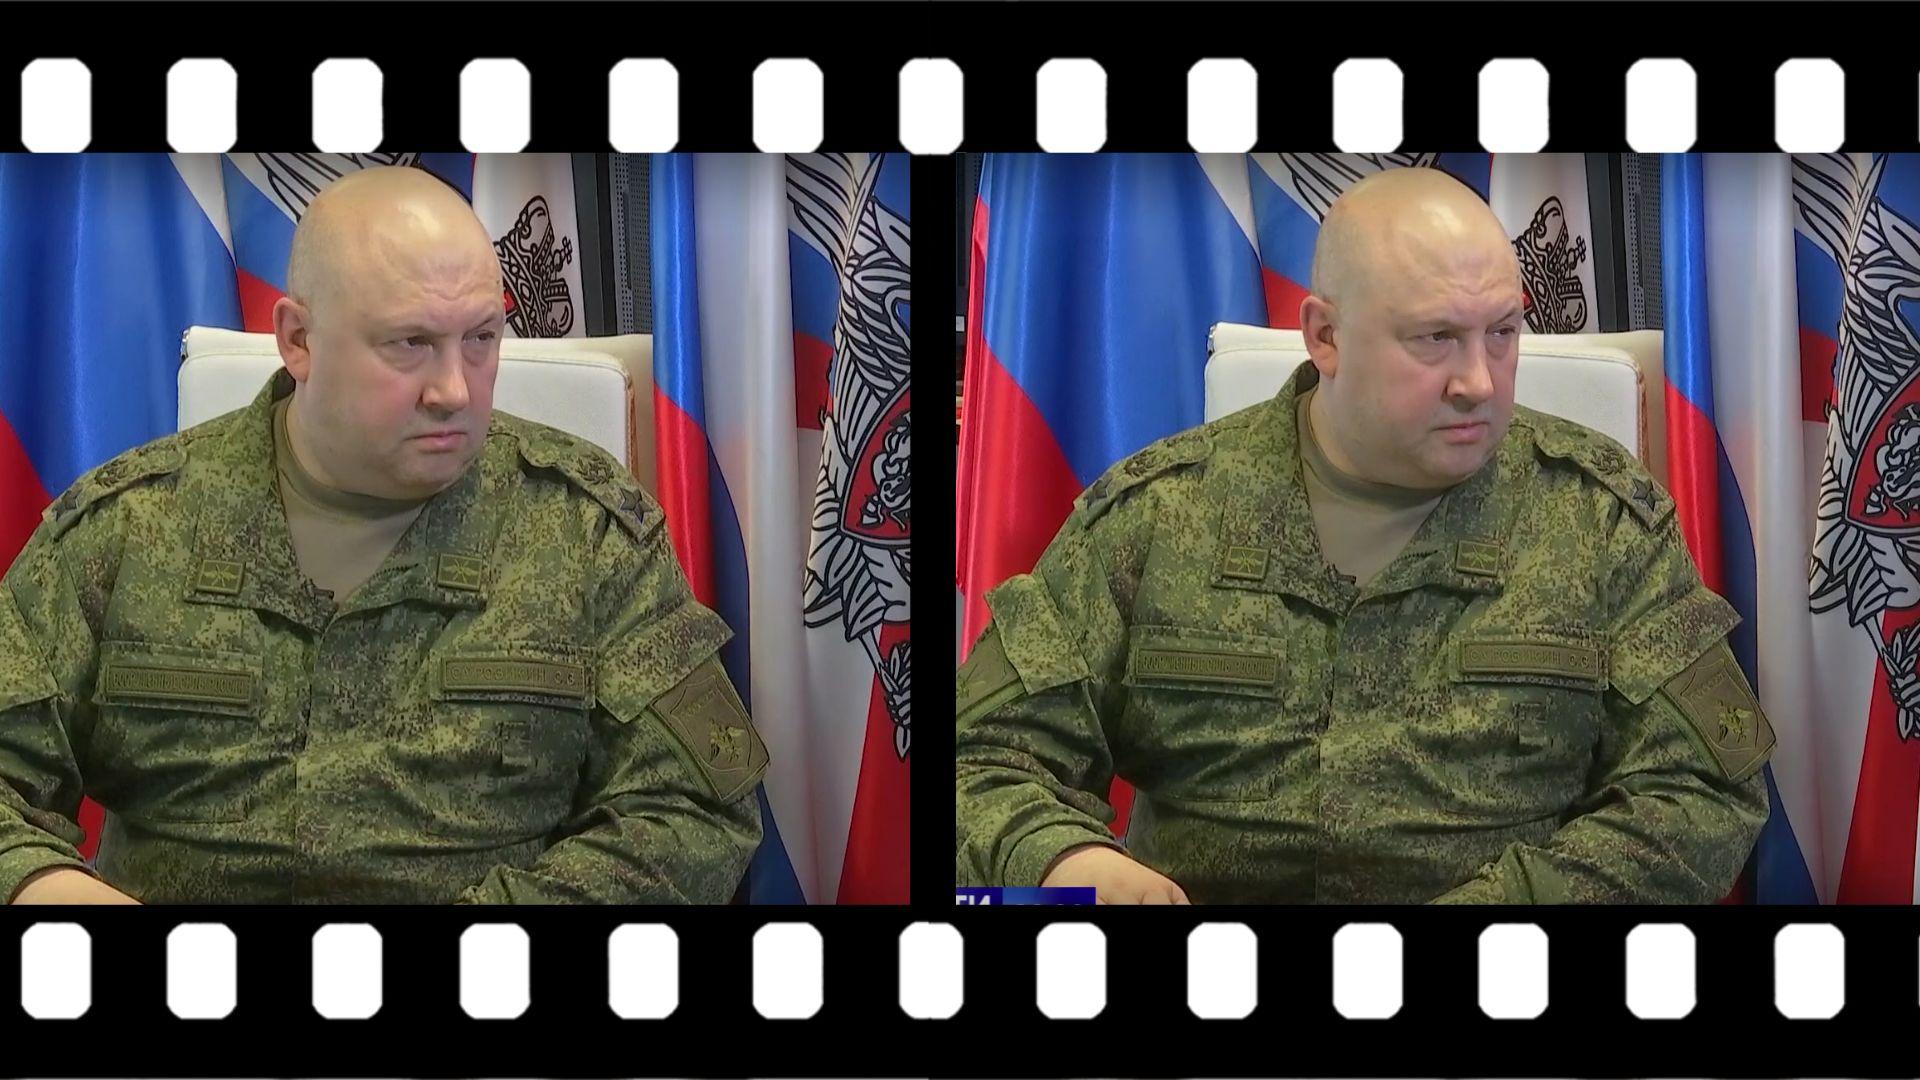 Dwa zdjęcie tegiego lysego wojskowego, który mówi nie zmieniając mimiki